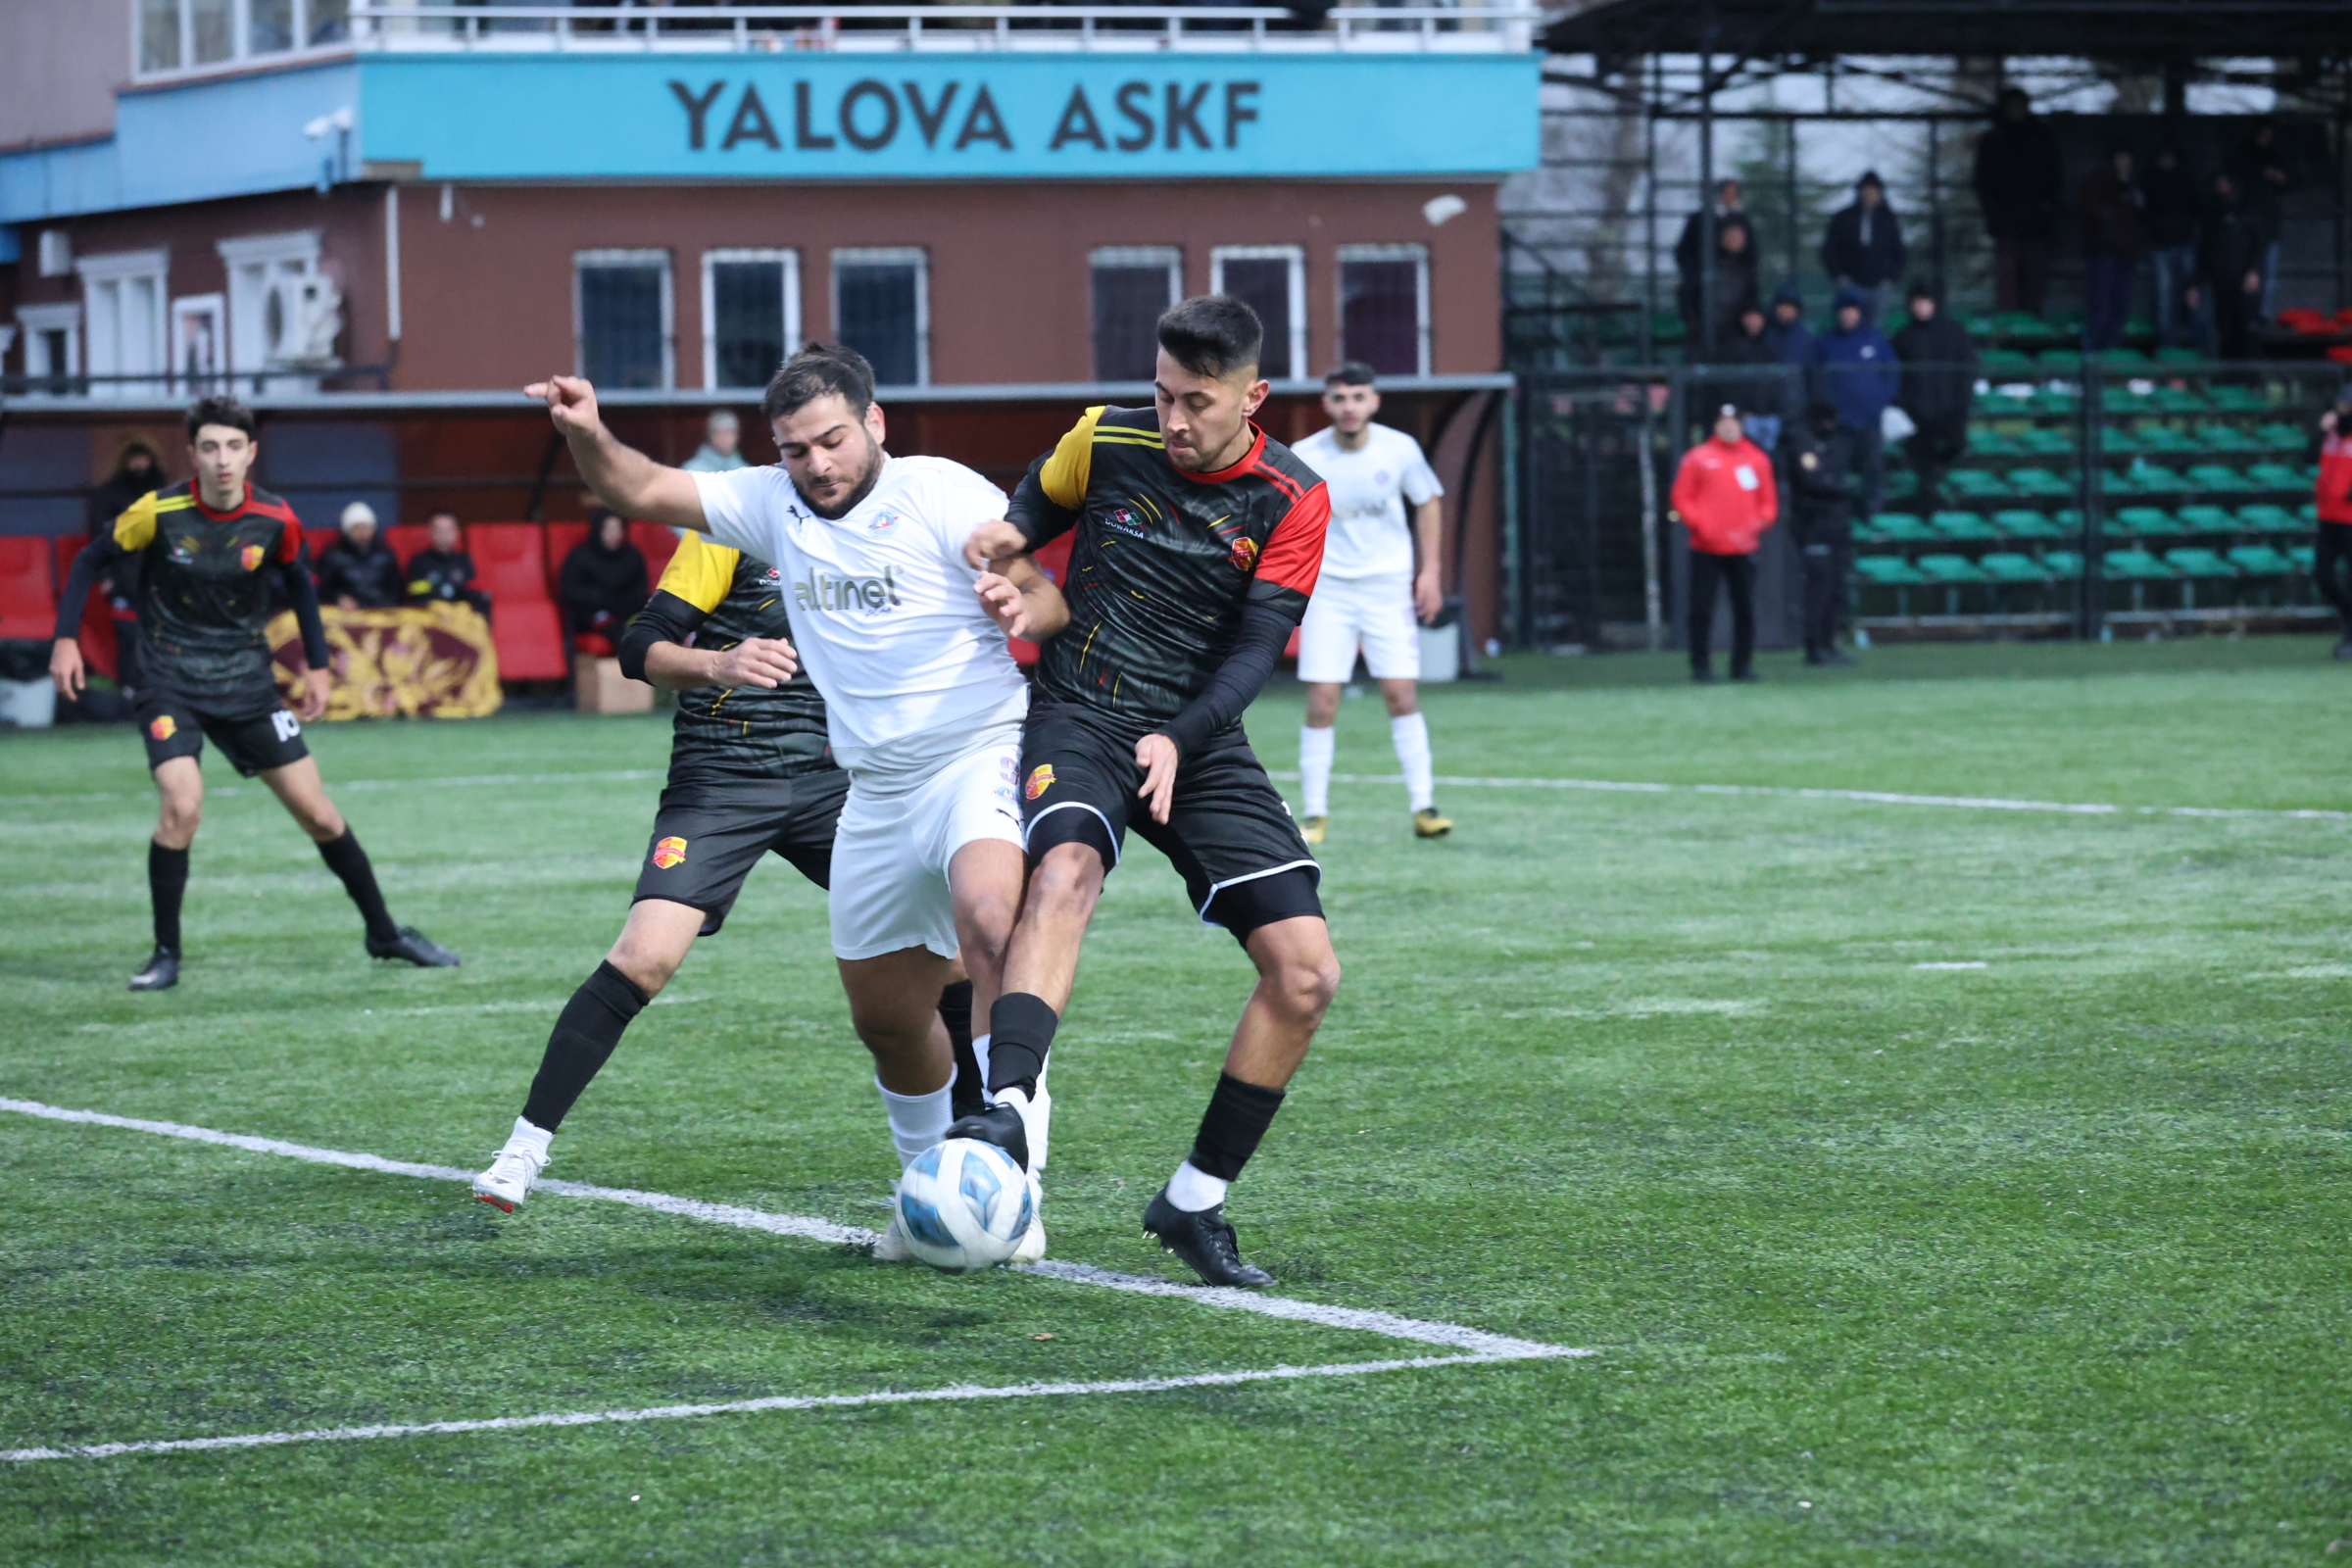 yalova-ciftlikkoy-belediyespor-taskopruspor-mac-futbol-galibiyet (5)